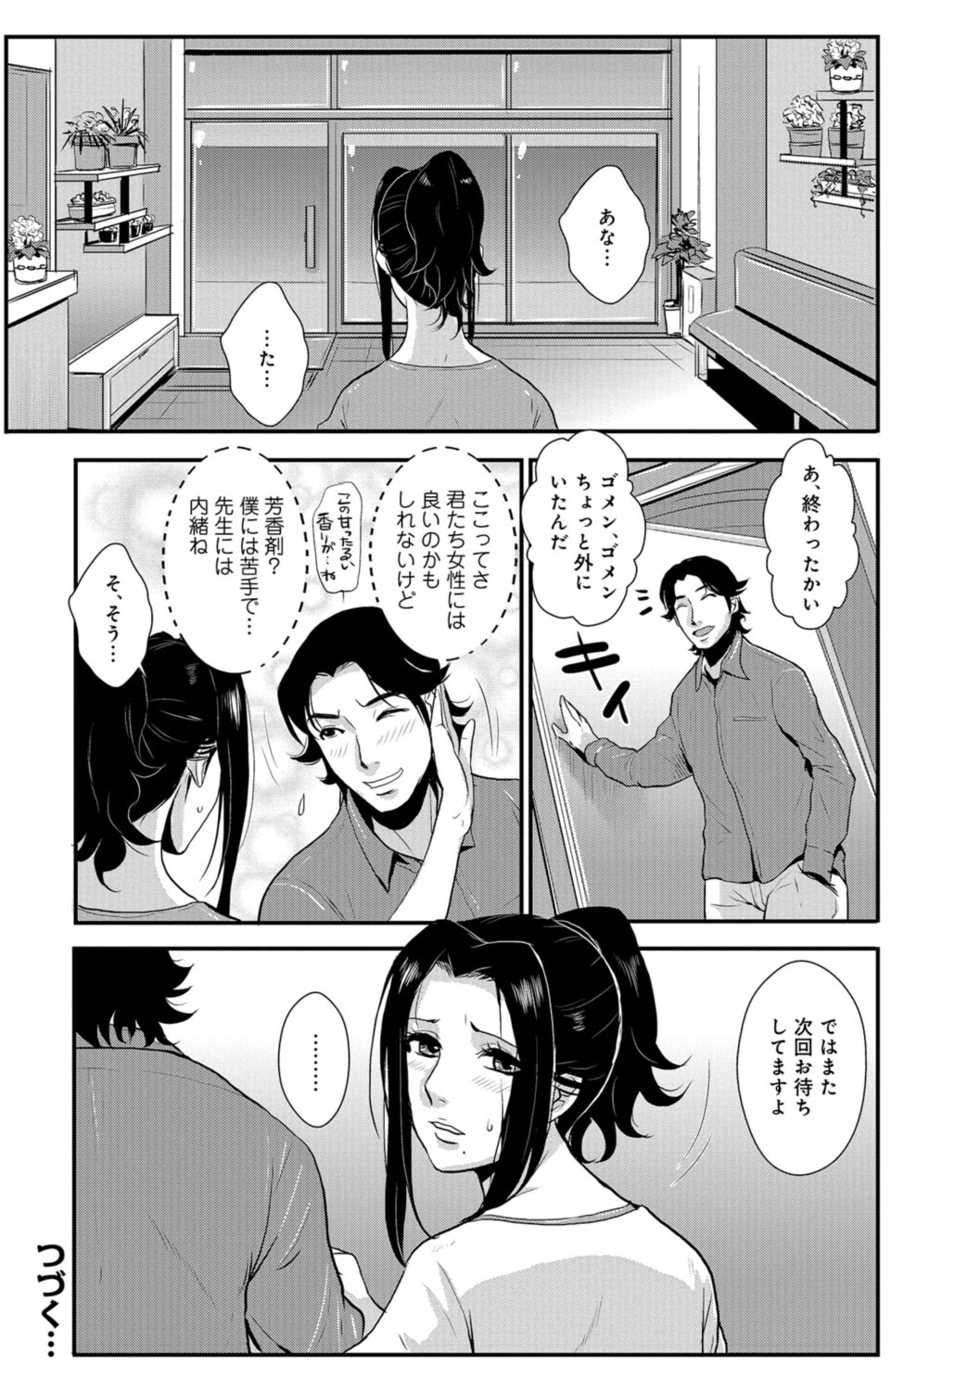 Kakutou Oukoku Katei Saien Vol. 3 - Page 35. 